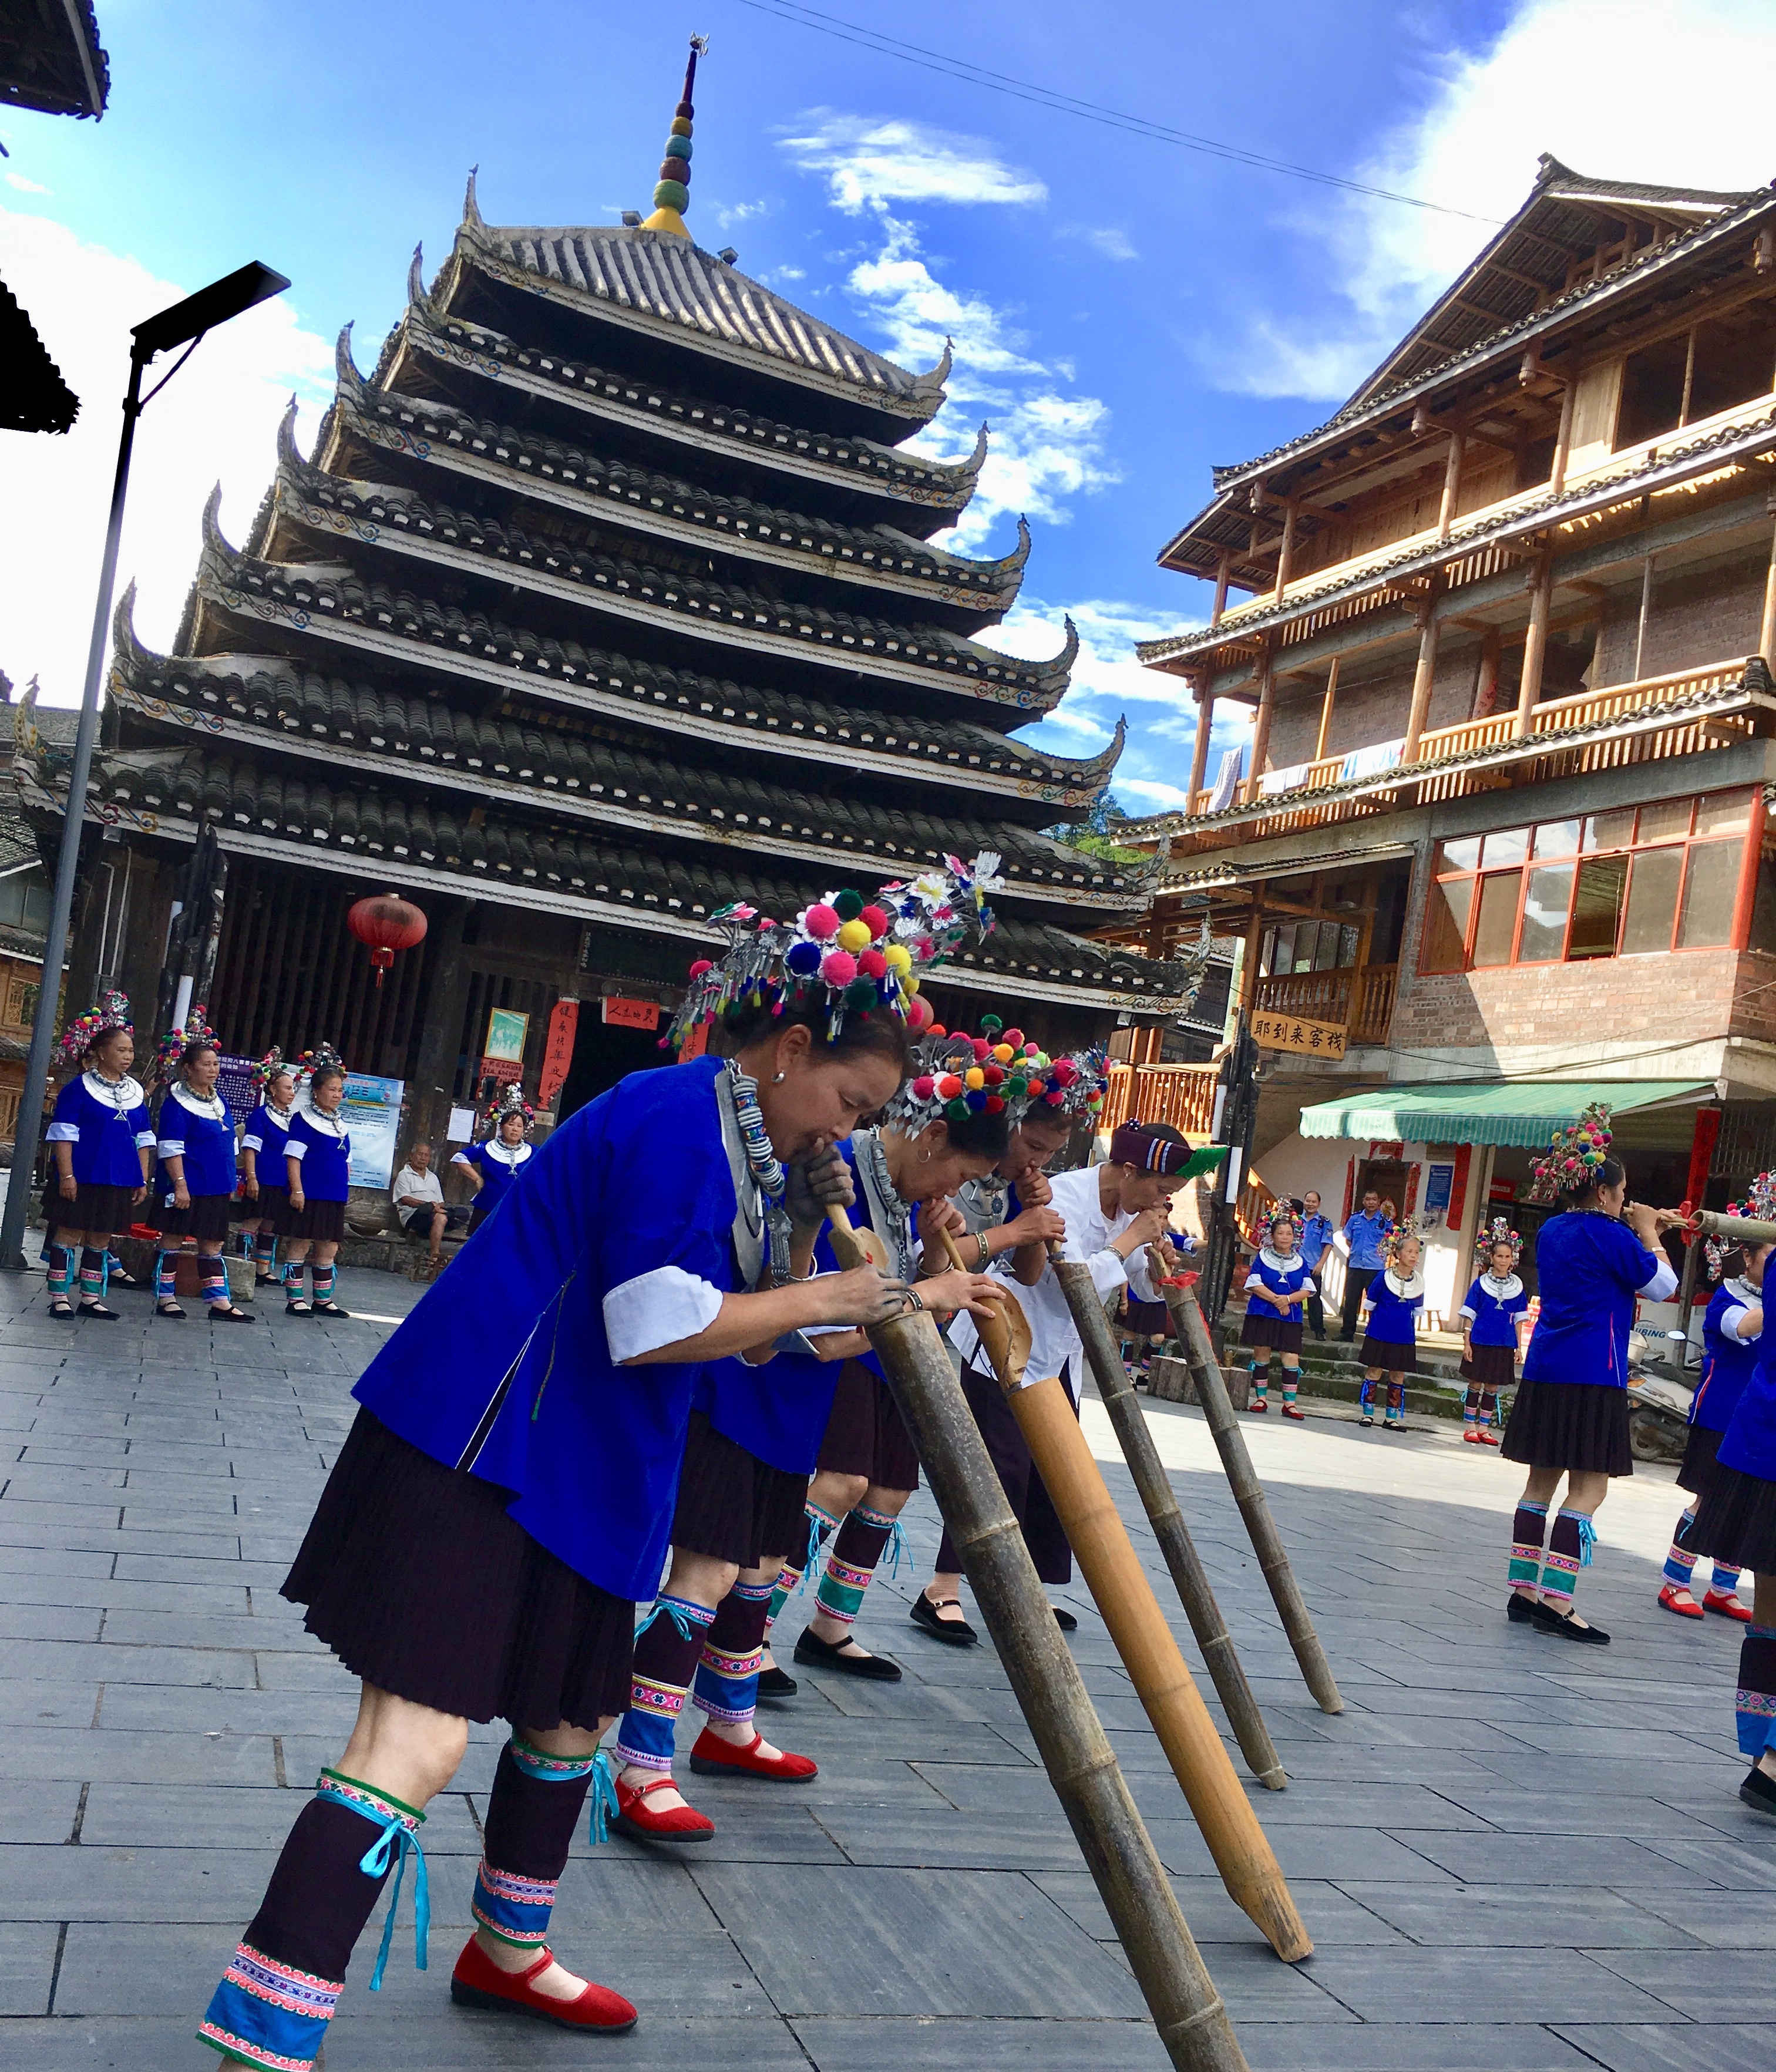 广西三江:侗族文化 特色旅游助力脱贫